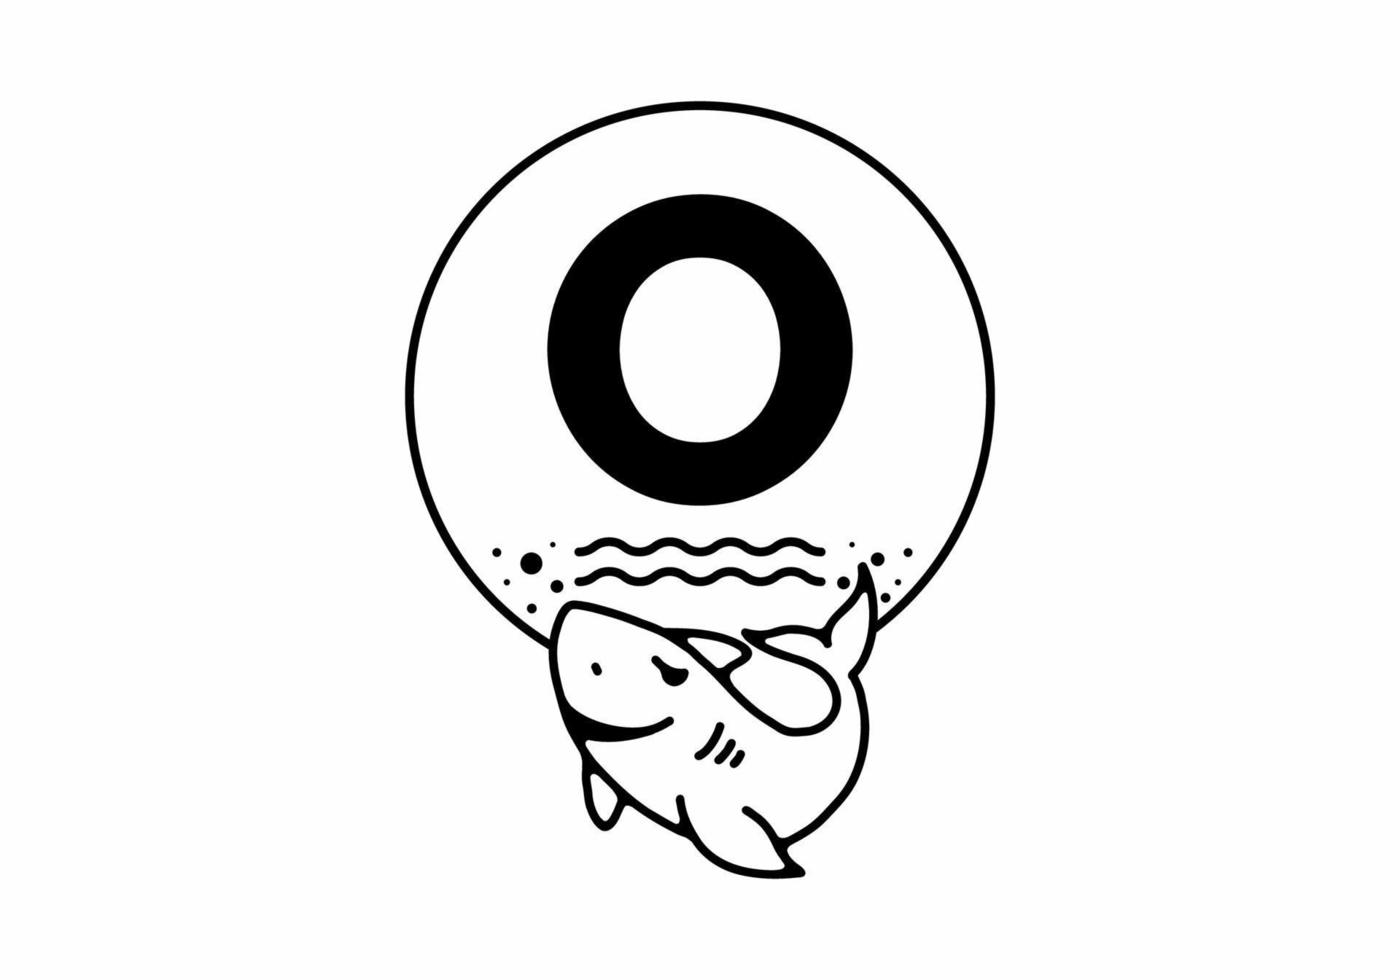 schwarze linie kunstillustration des hais mit o-anfangsbuchstaben vektor